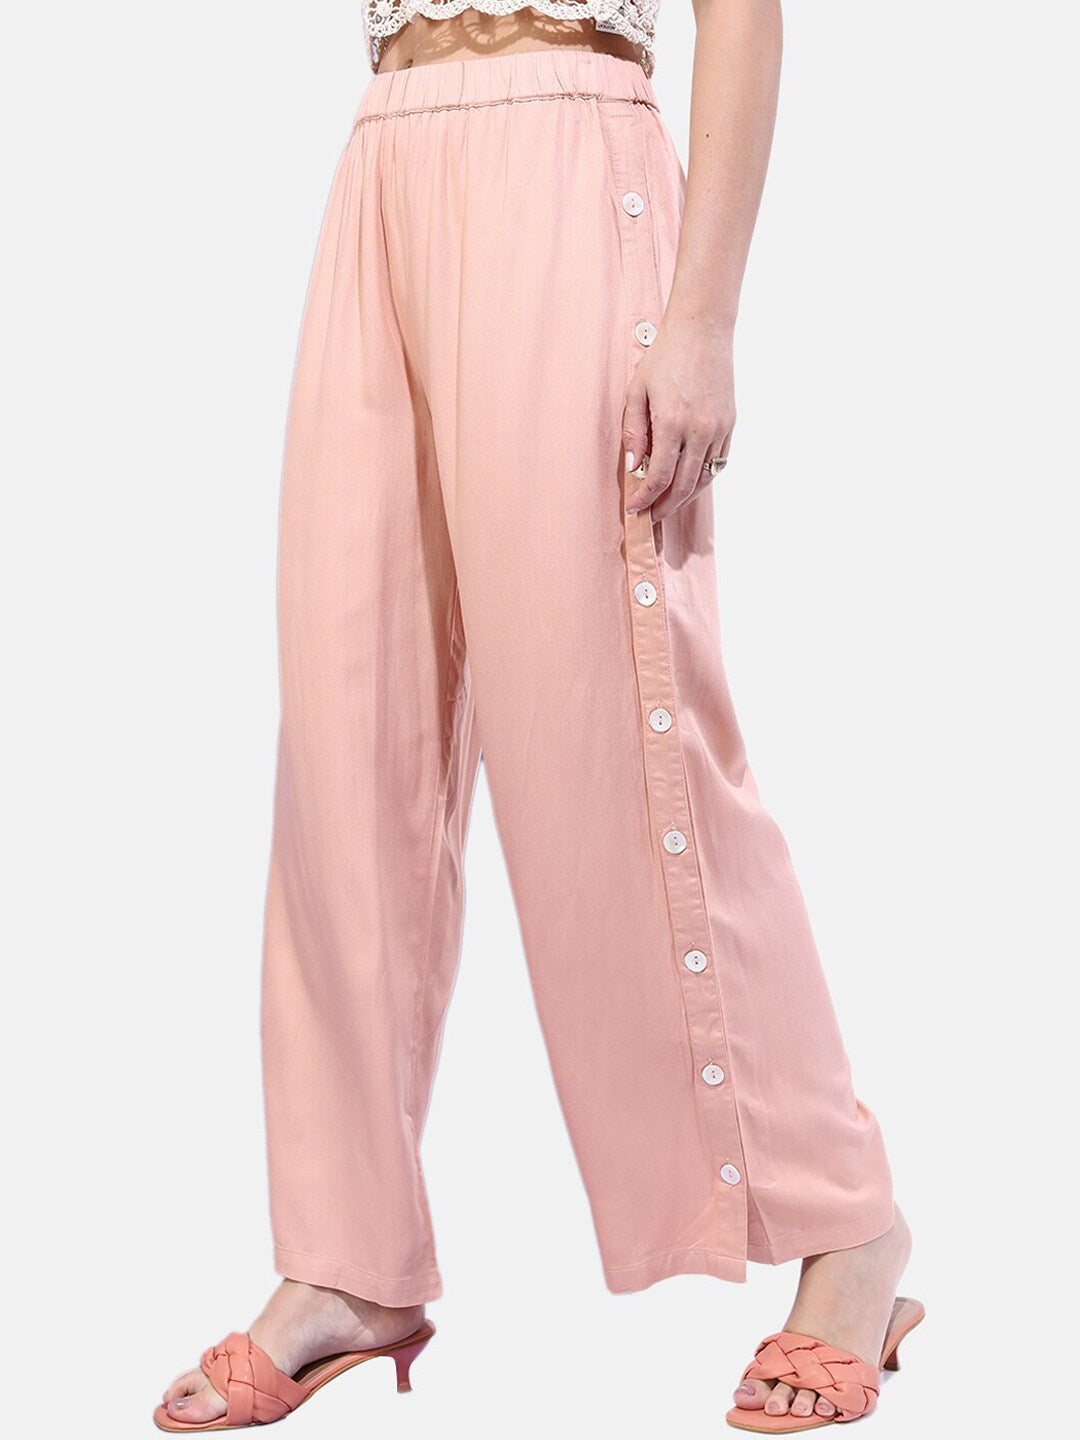 Shop Women Solid Buttoned Wide Leg Pants Online.